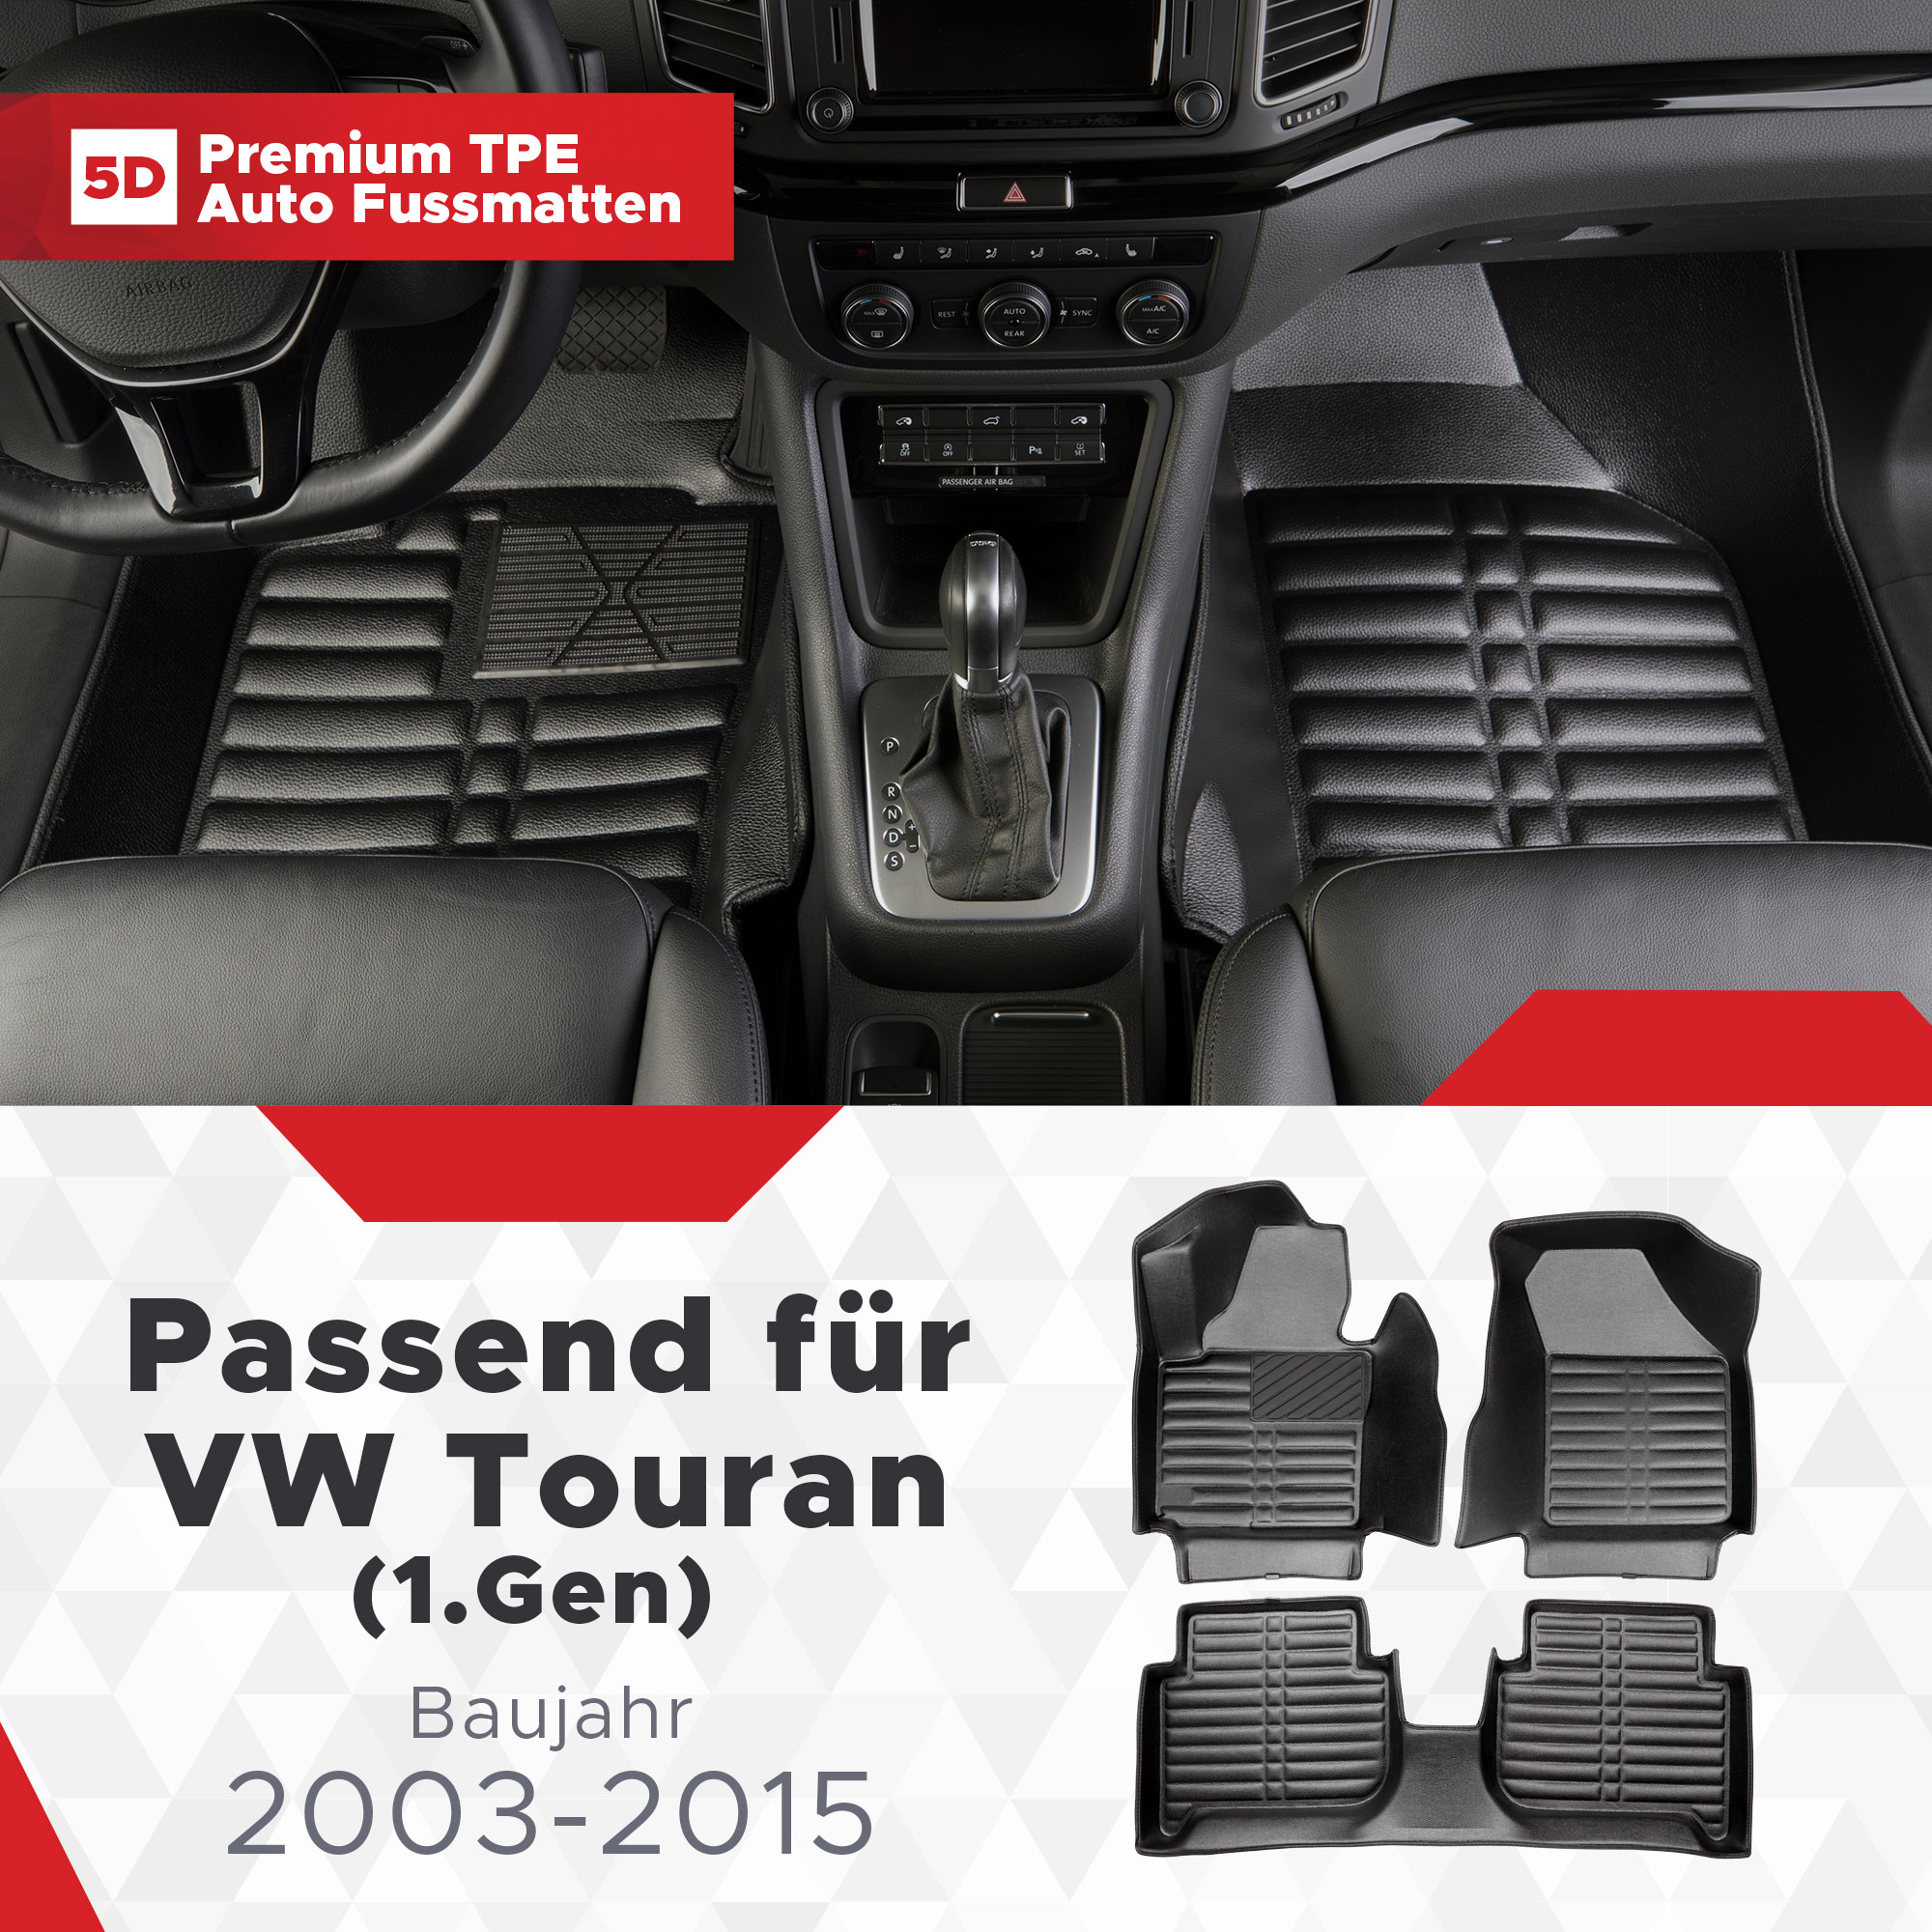 5D VW Touran (1.Gen) 2003-2015 Fussmatten Bj TPE